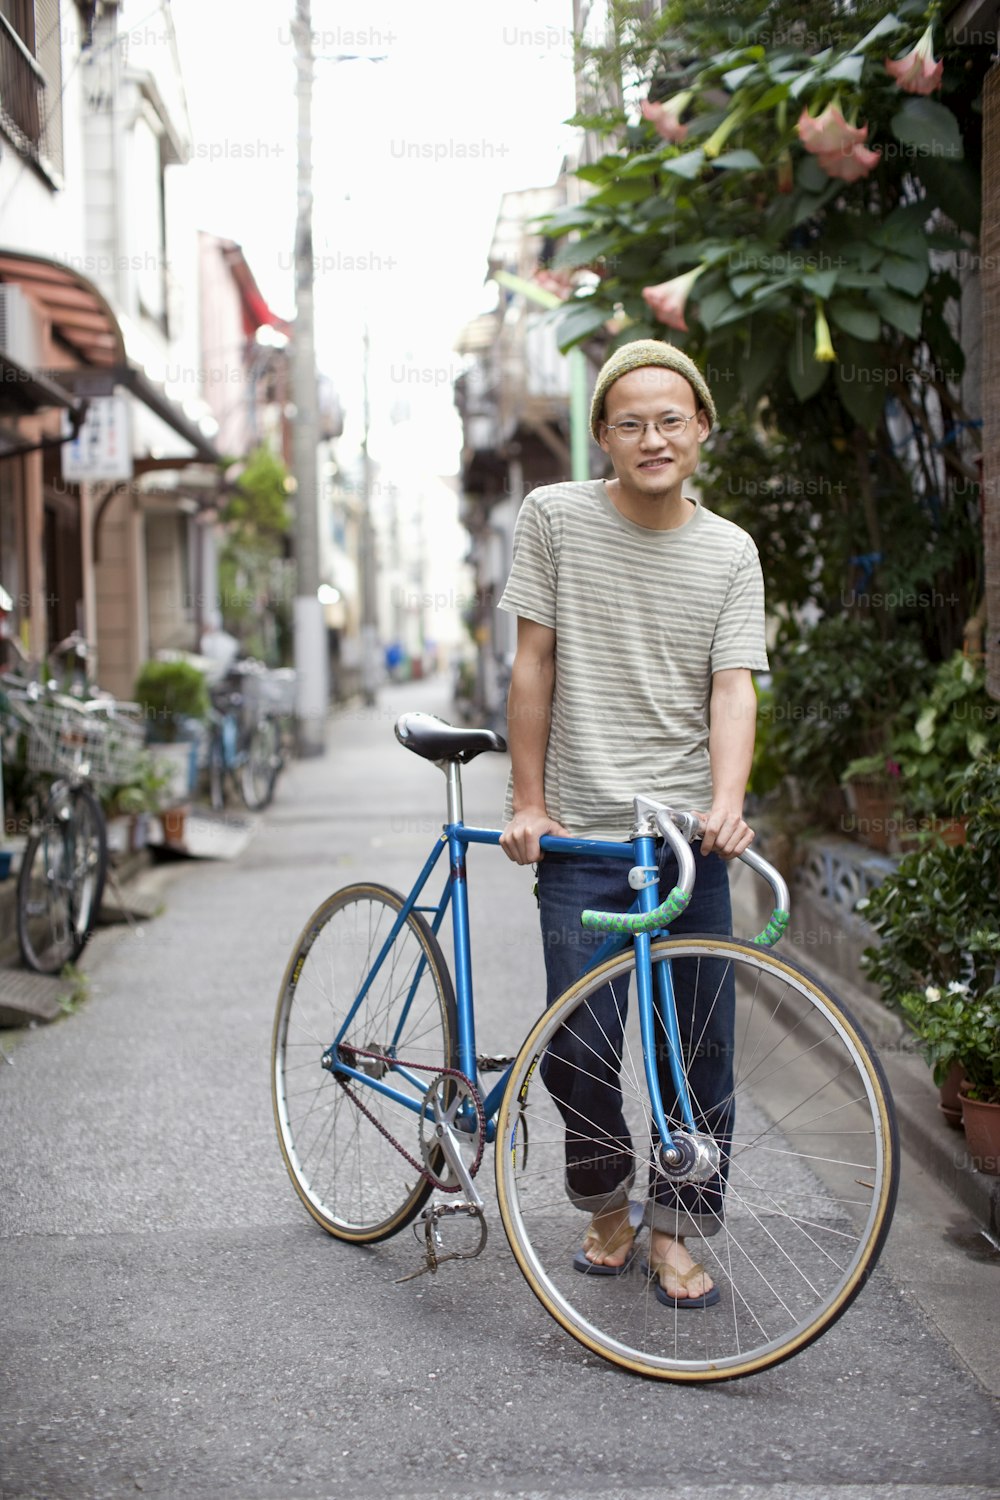 파란 자전거 옆에 서 있는 남자